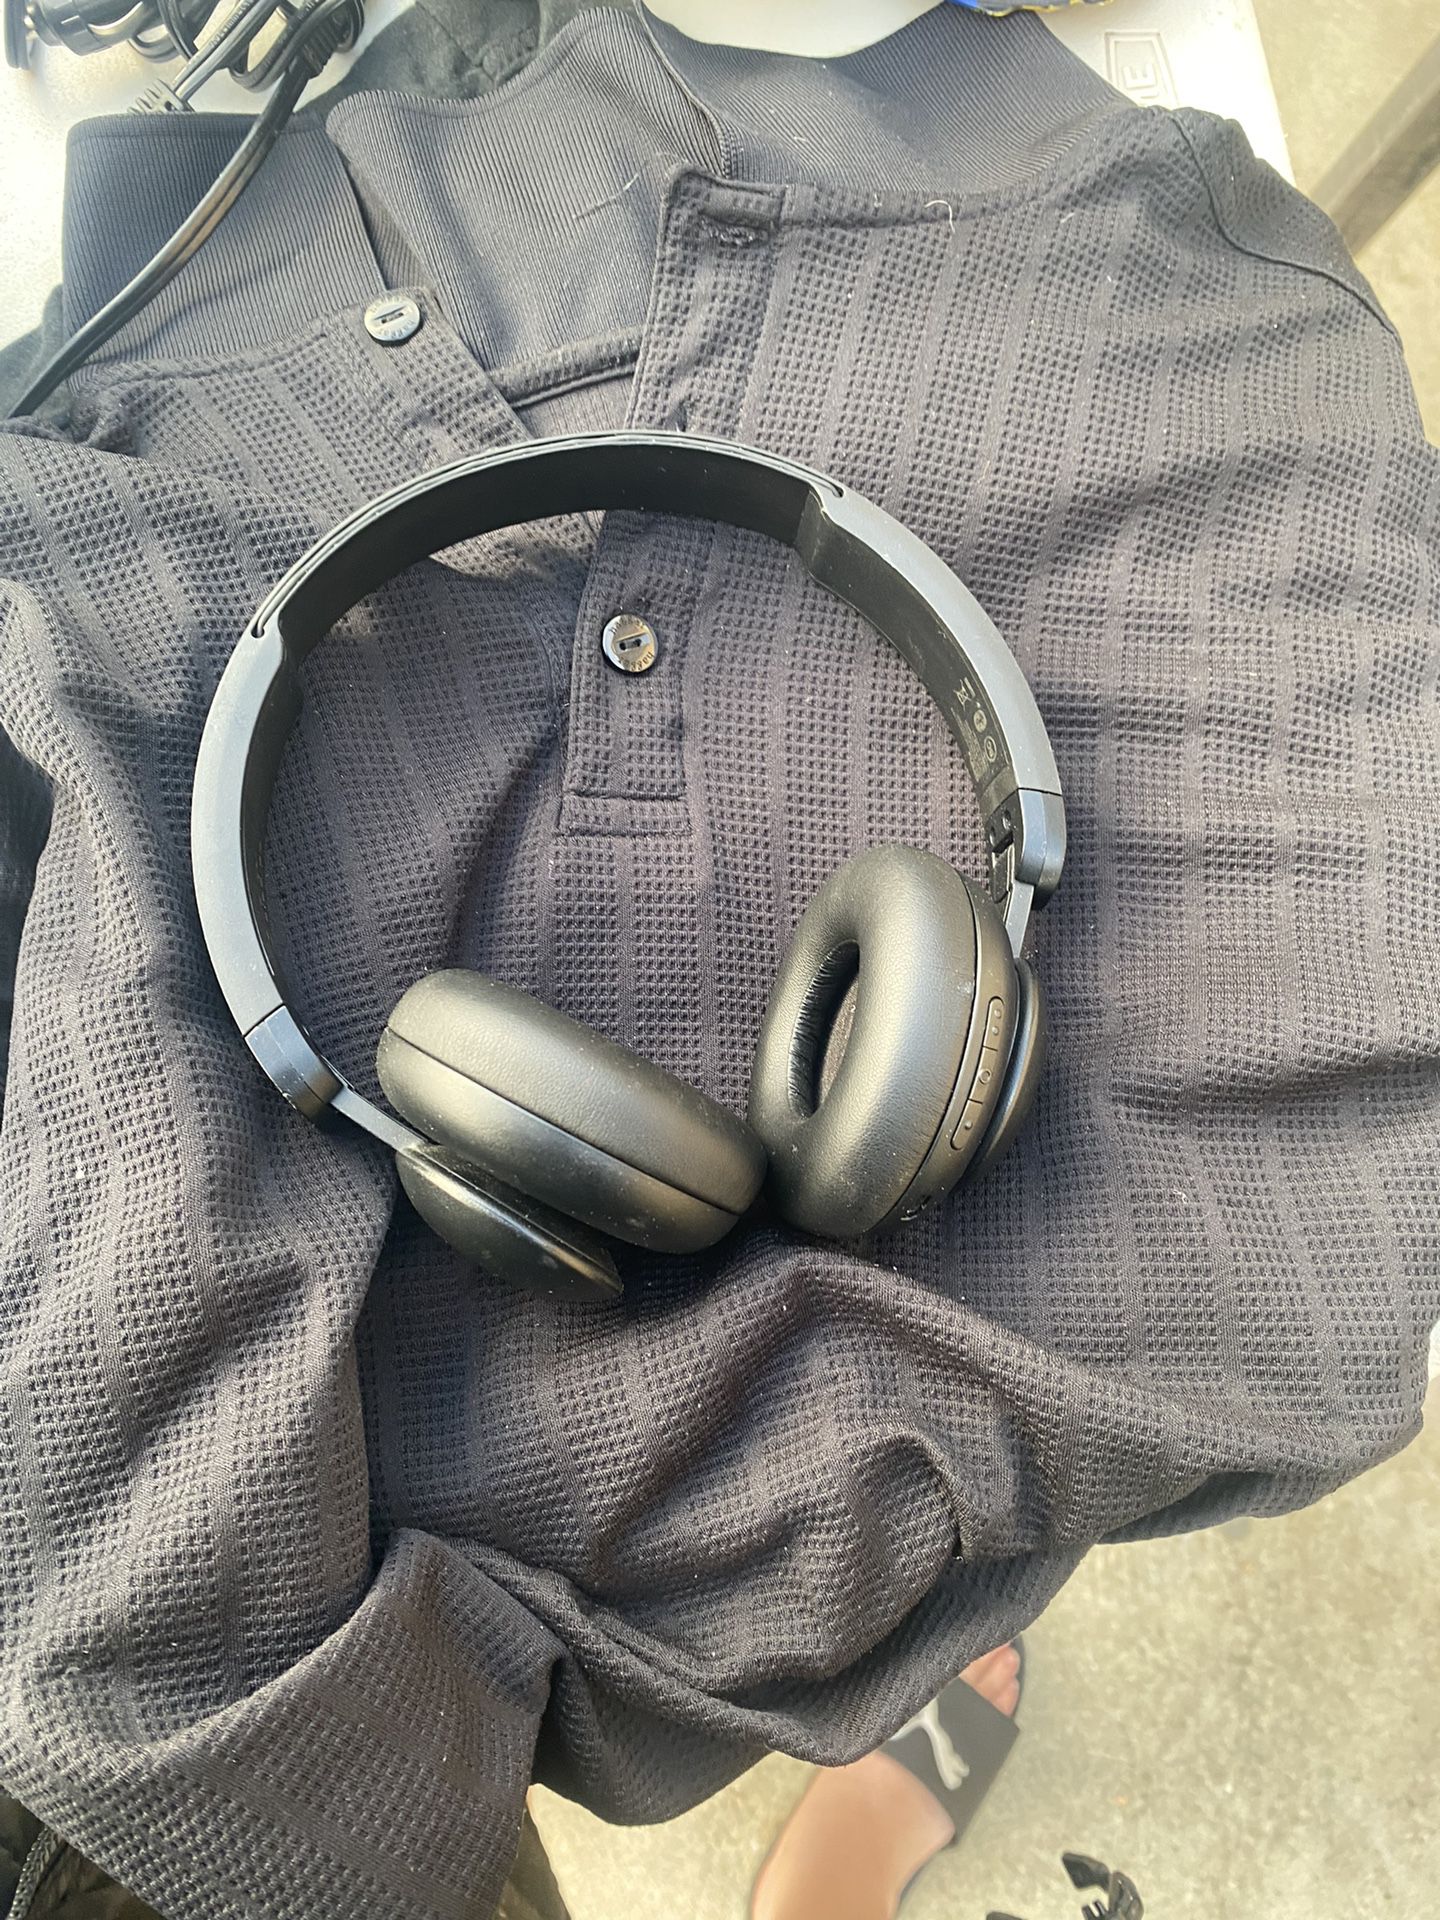 Bluetooth Headphones ONN